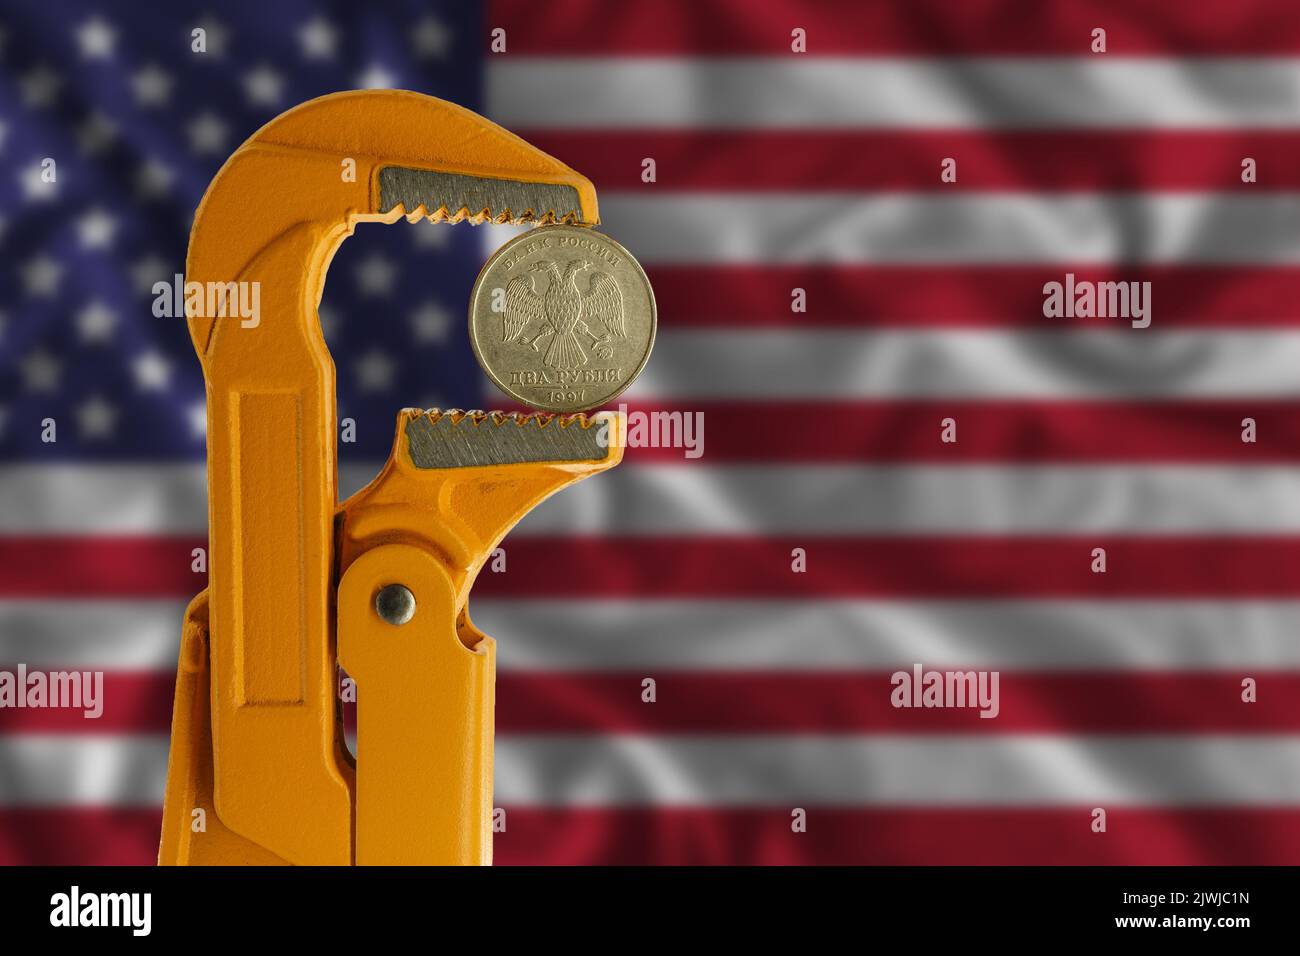 Moneta russa a due rubli tenuta in una chiave per idraulico arancione sullo sfondo della bandiera degli Stati Uniti. Lato opposto della moneta. Foto Stock